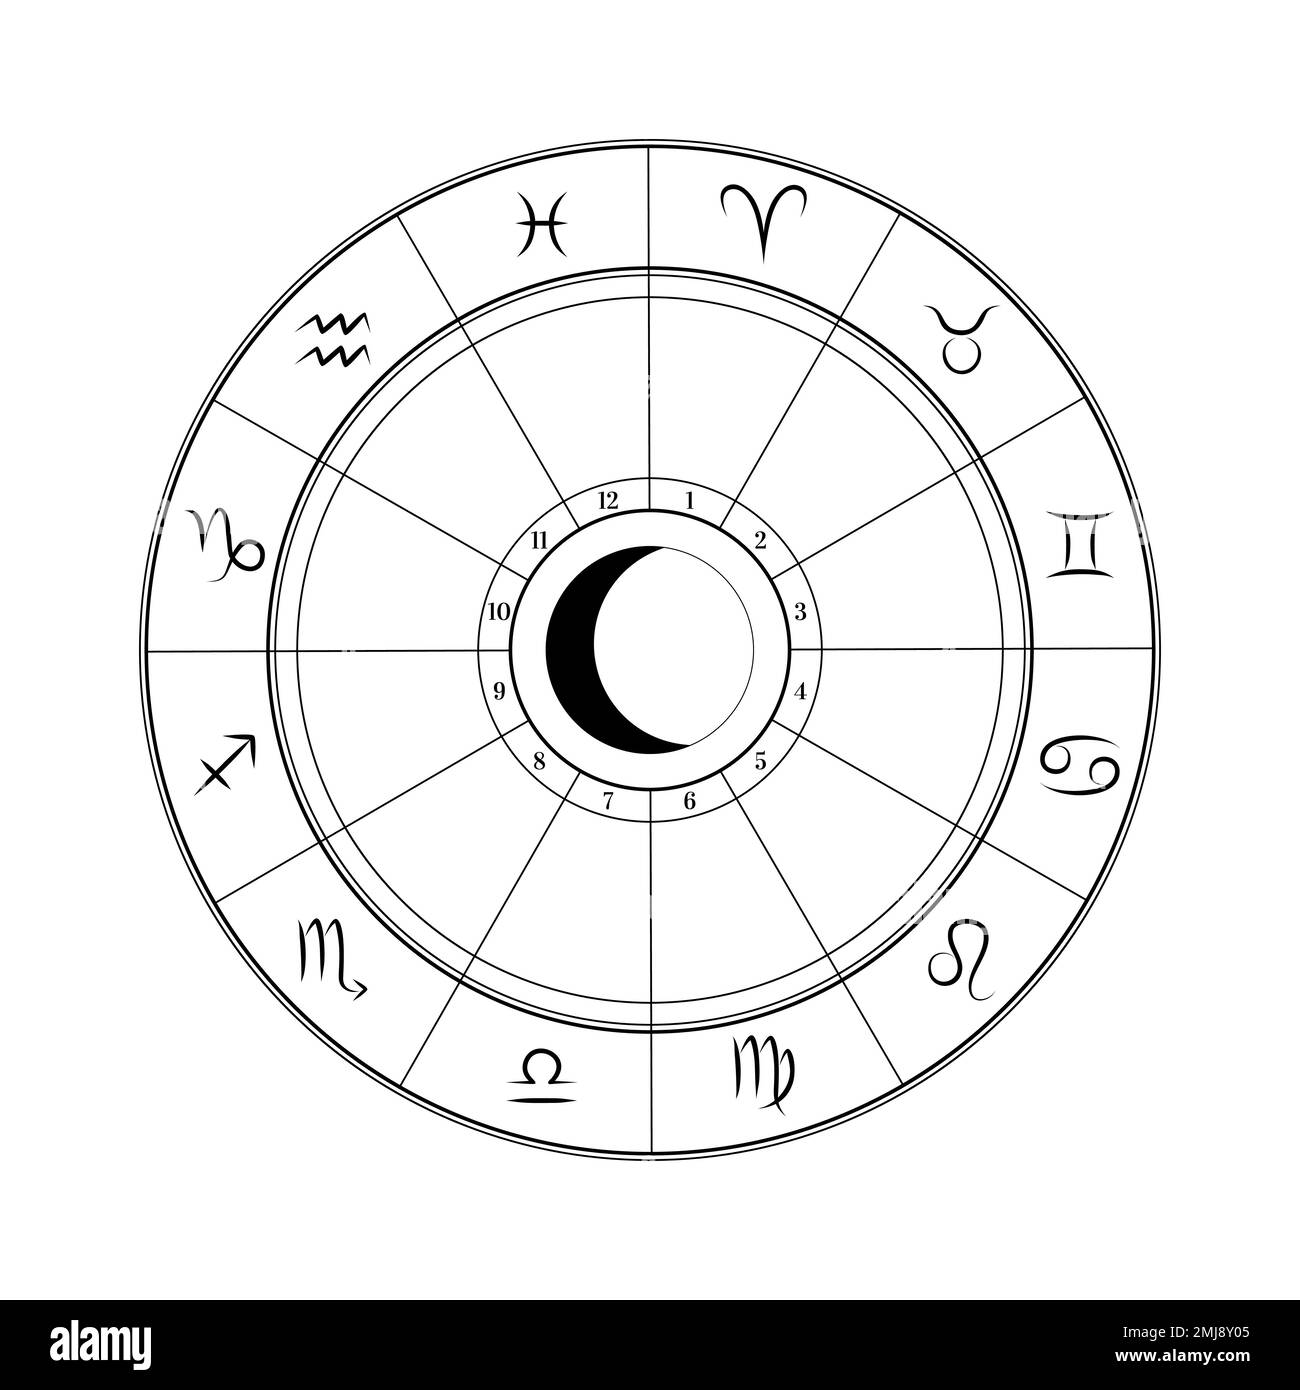 Roue de cercle de zodiaque astrologique avec des signes de zodiaque pour la prévision d'horoscope Illustration de Vecteur